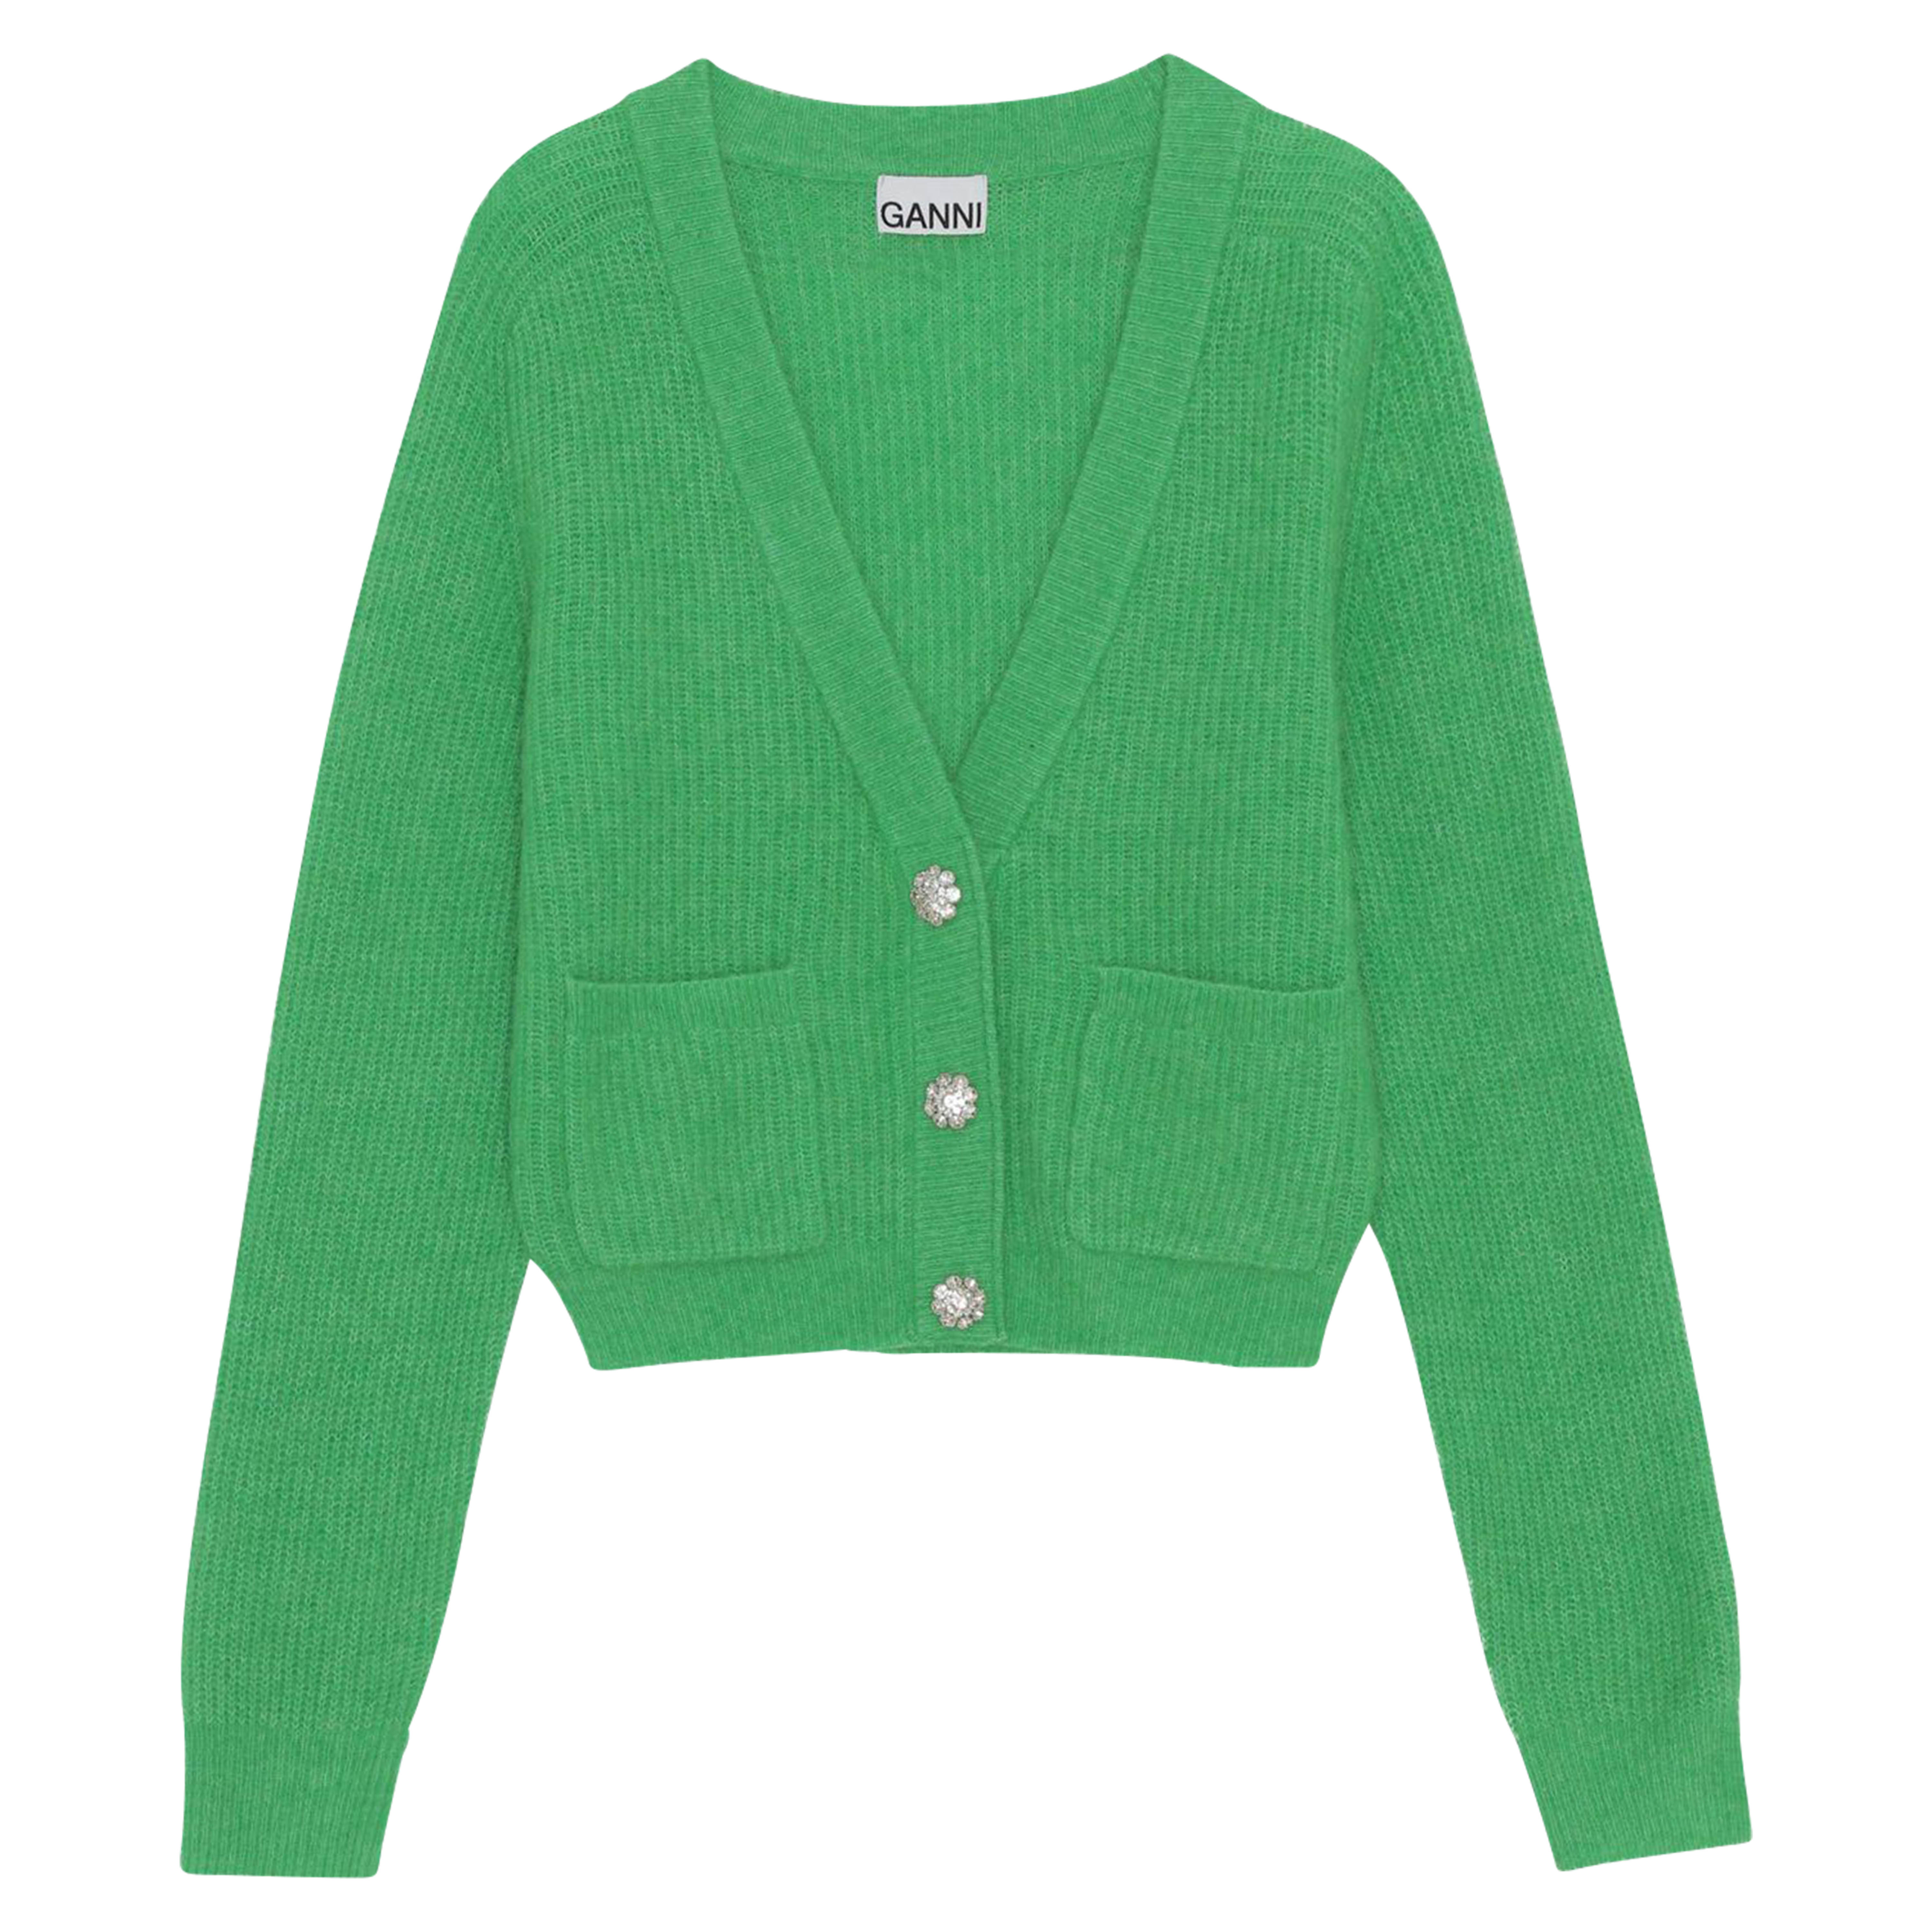 Ganni Soft Knit Cardigan Solid in Kelly Green XS